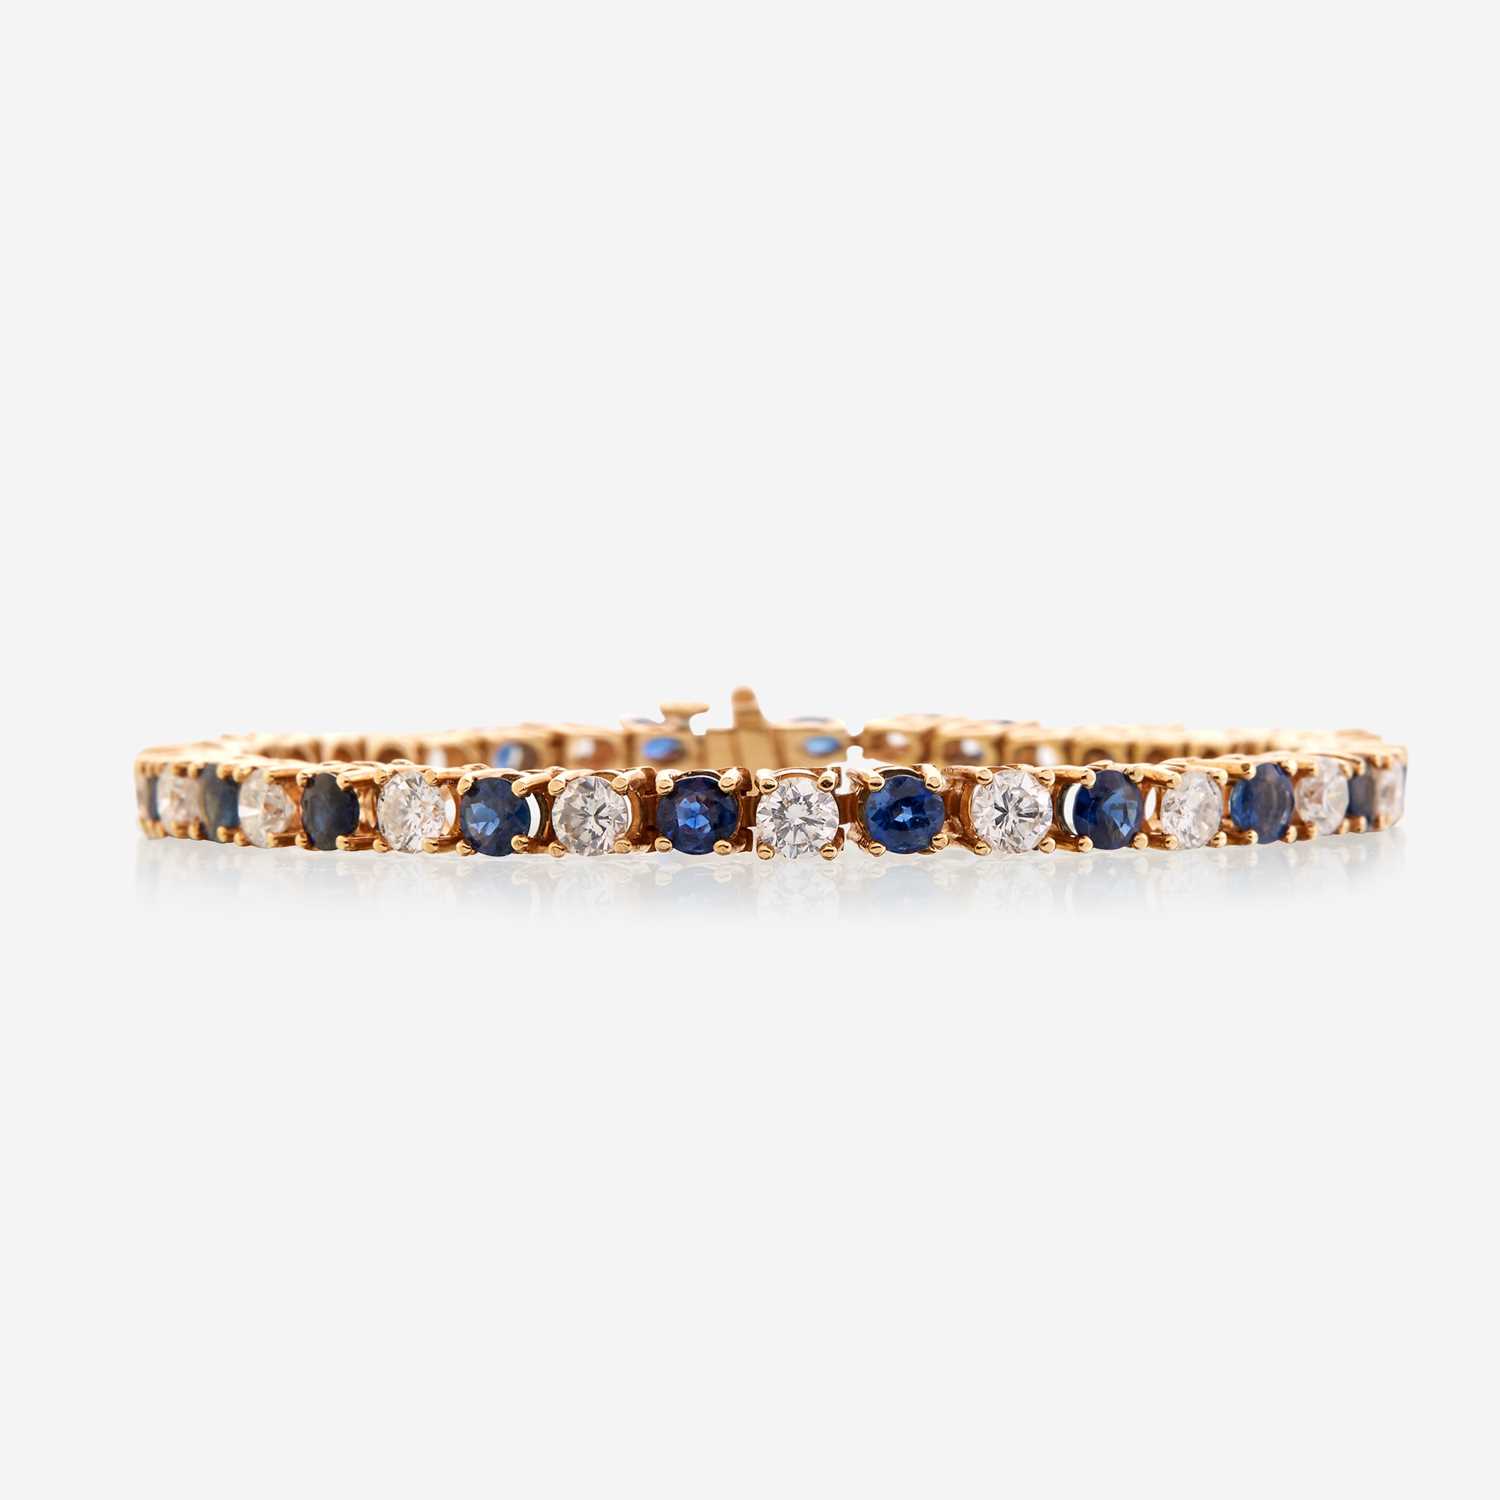 Lot 41 - A diamond, sapphire, and fourteen karat gold bracelet